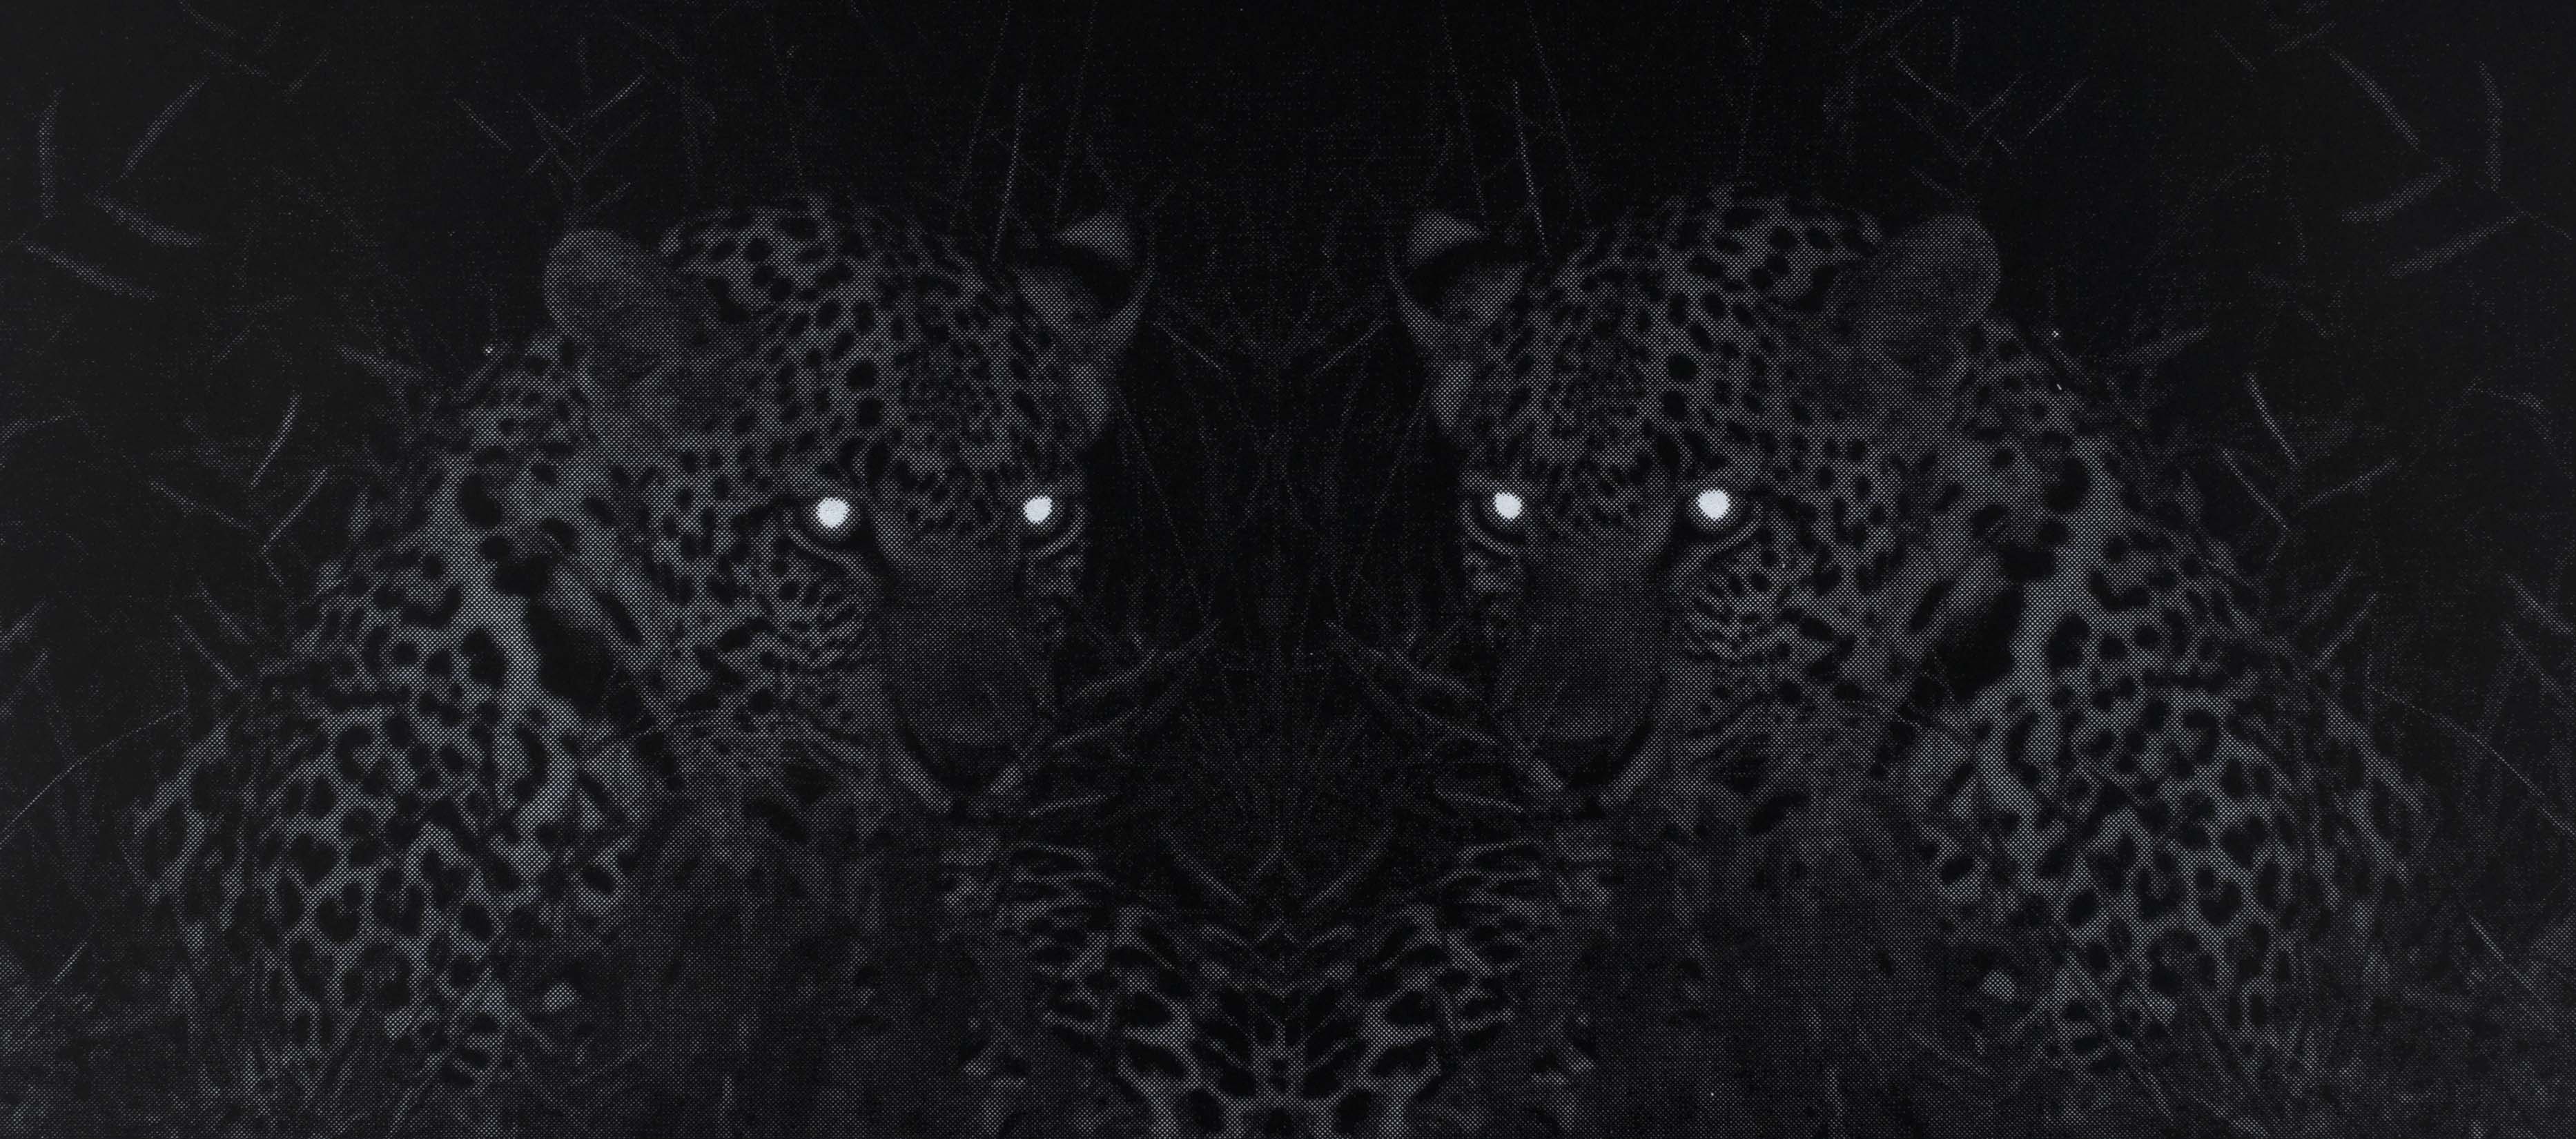 Eve-Biddle-Artworks-Big-Cats-Leopard-Africa-2018